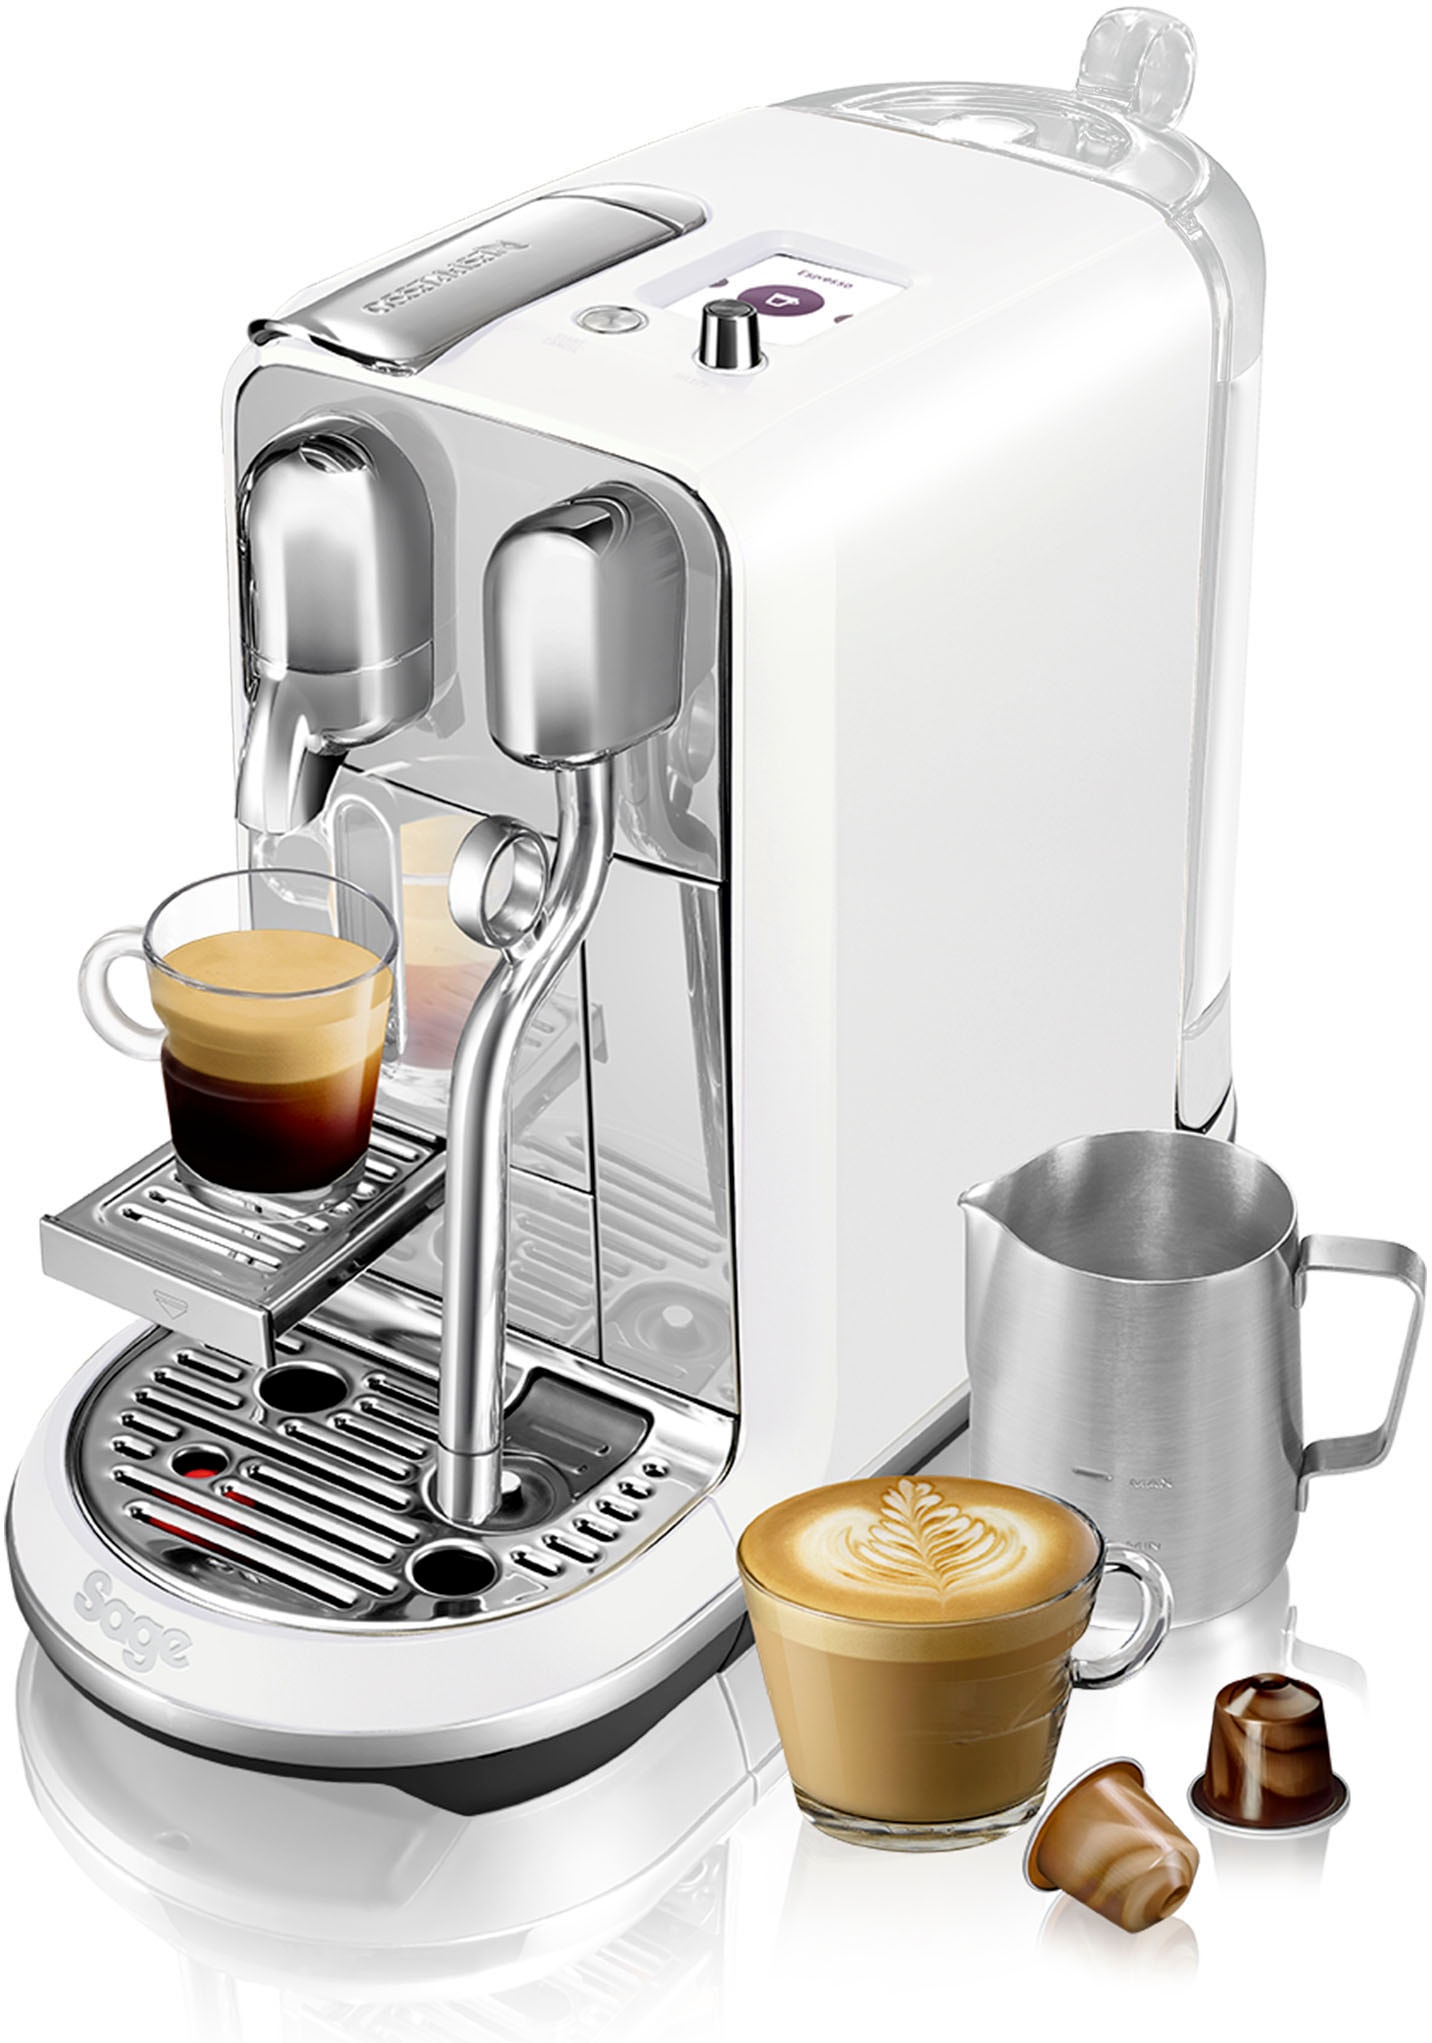 Nespresso Kaffeemaschinen jetzt günstig auf Teilzahlung bestellen